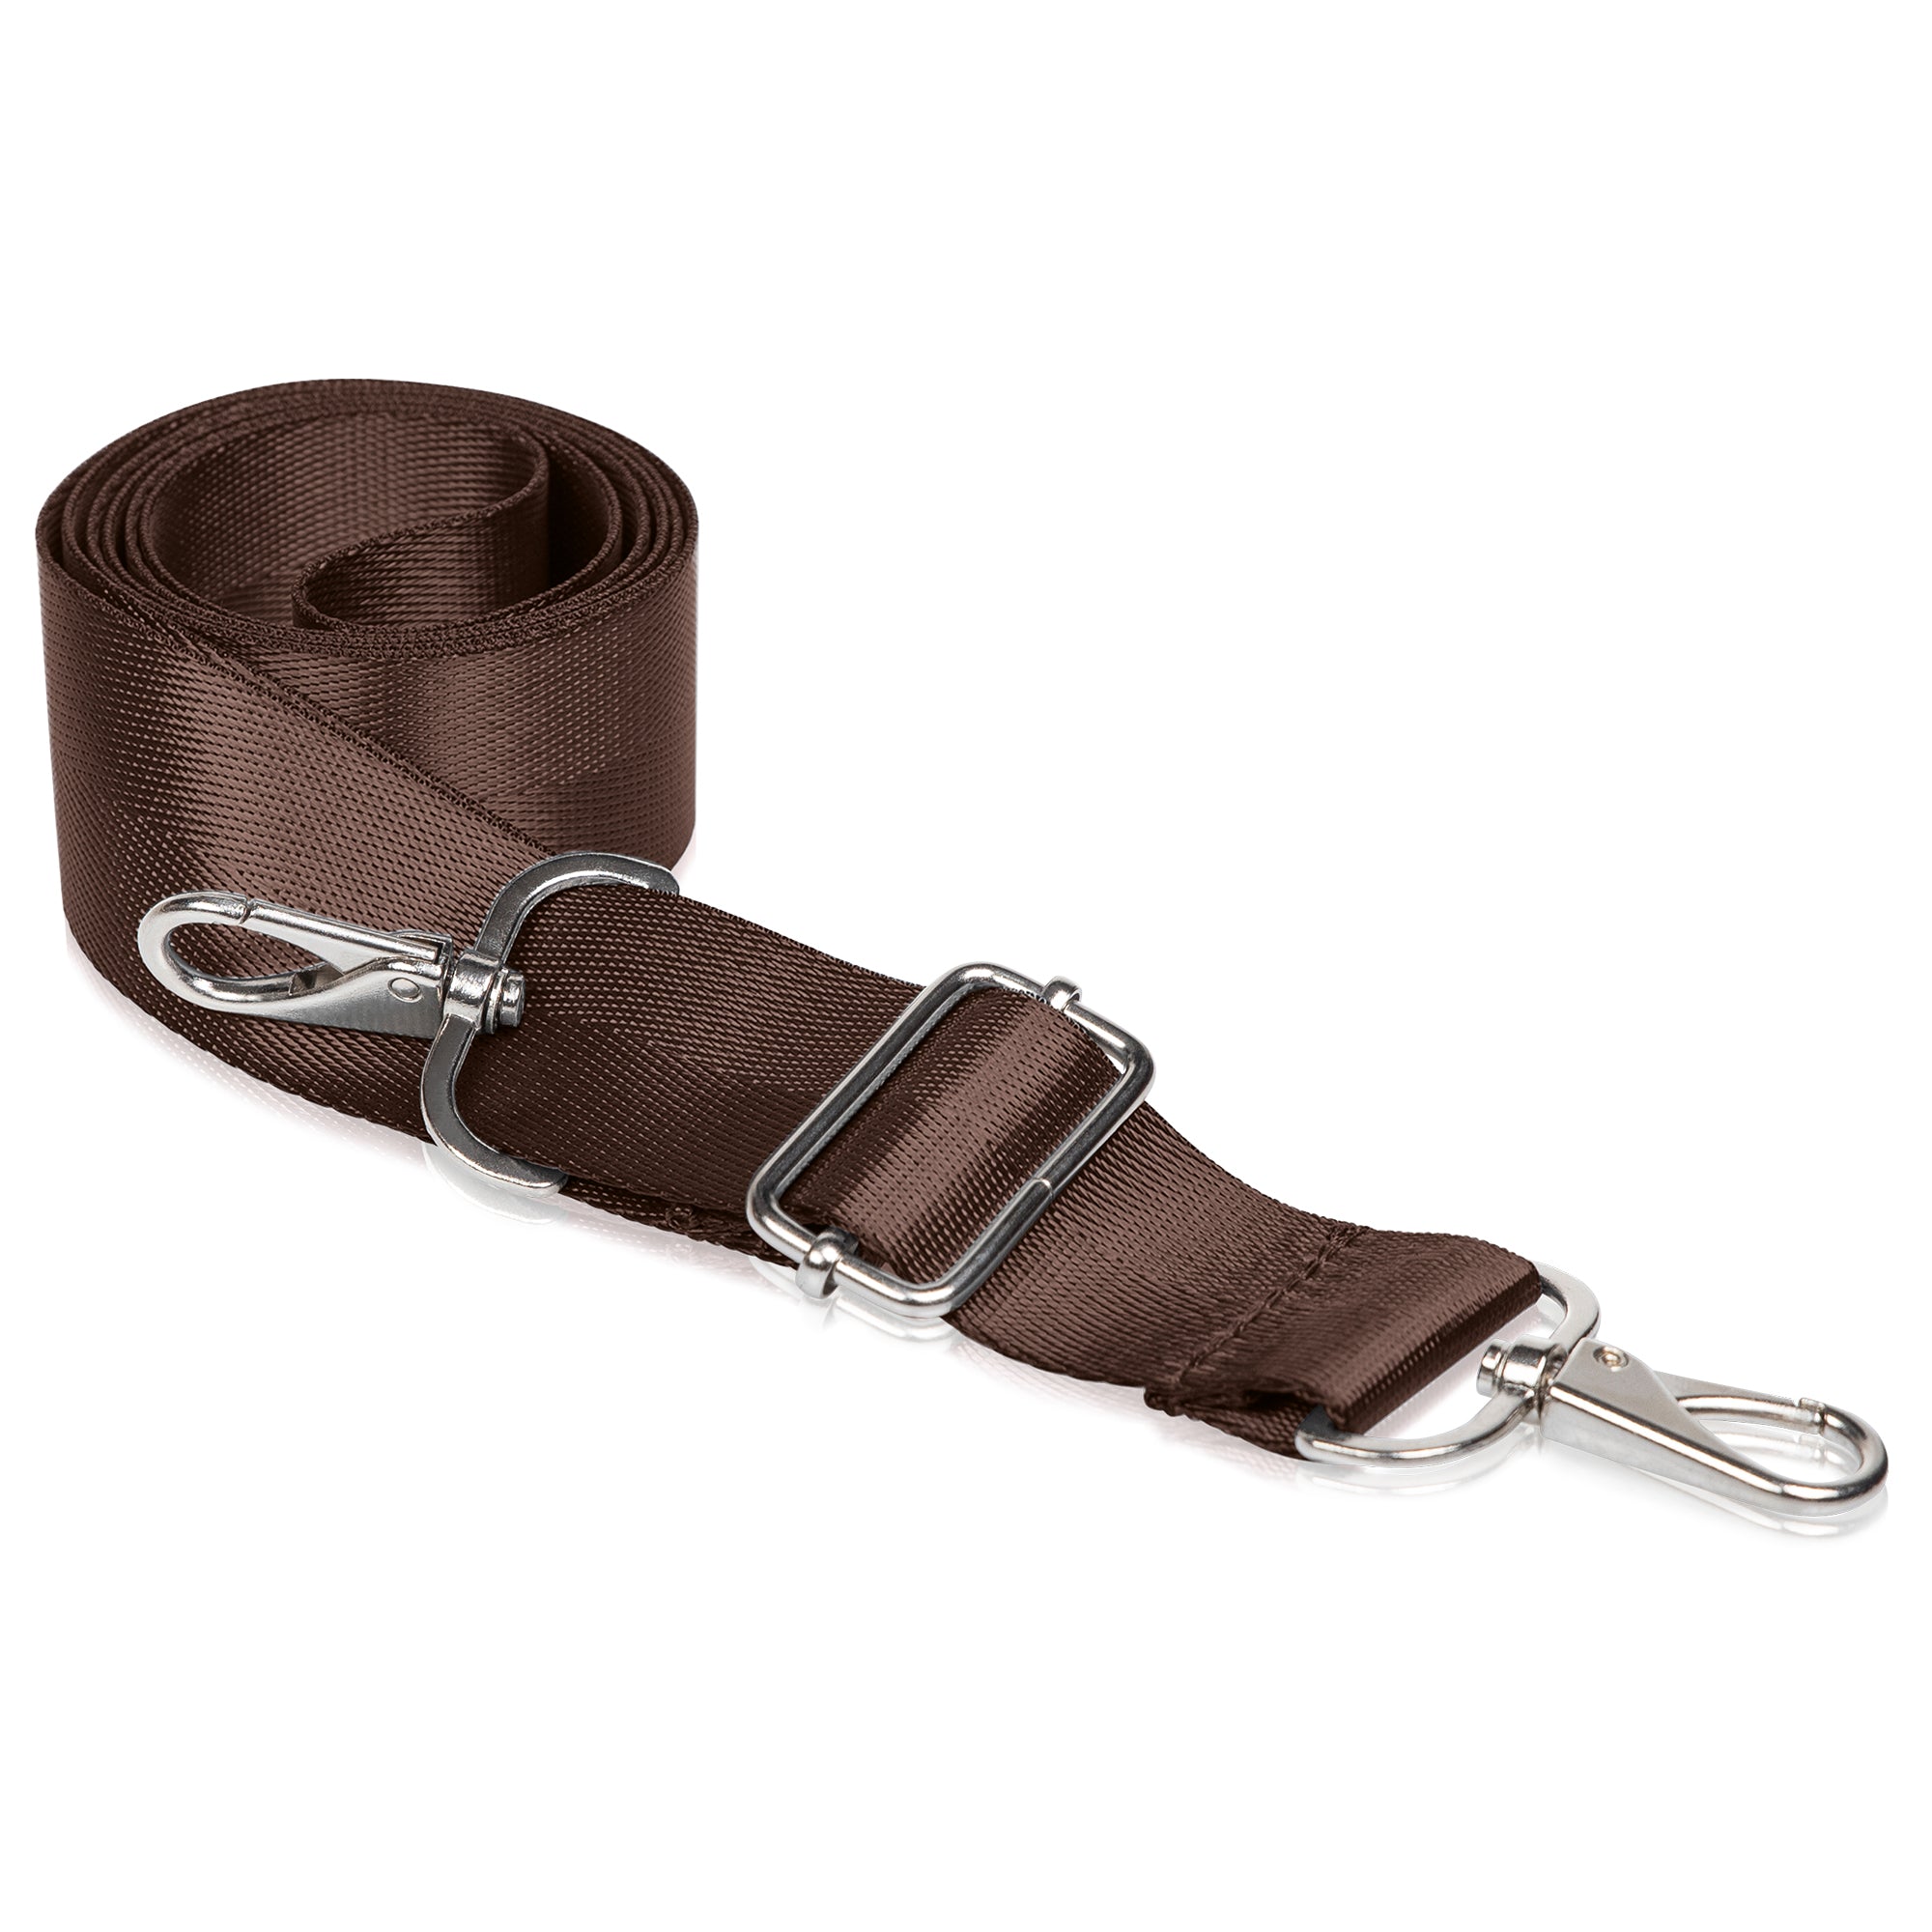 BENAVA Shoulder Strap for Bags Brown Adjustable With Carabiner